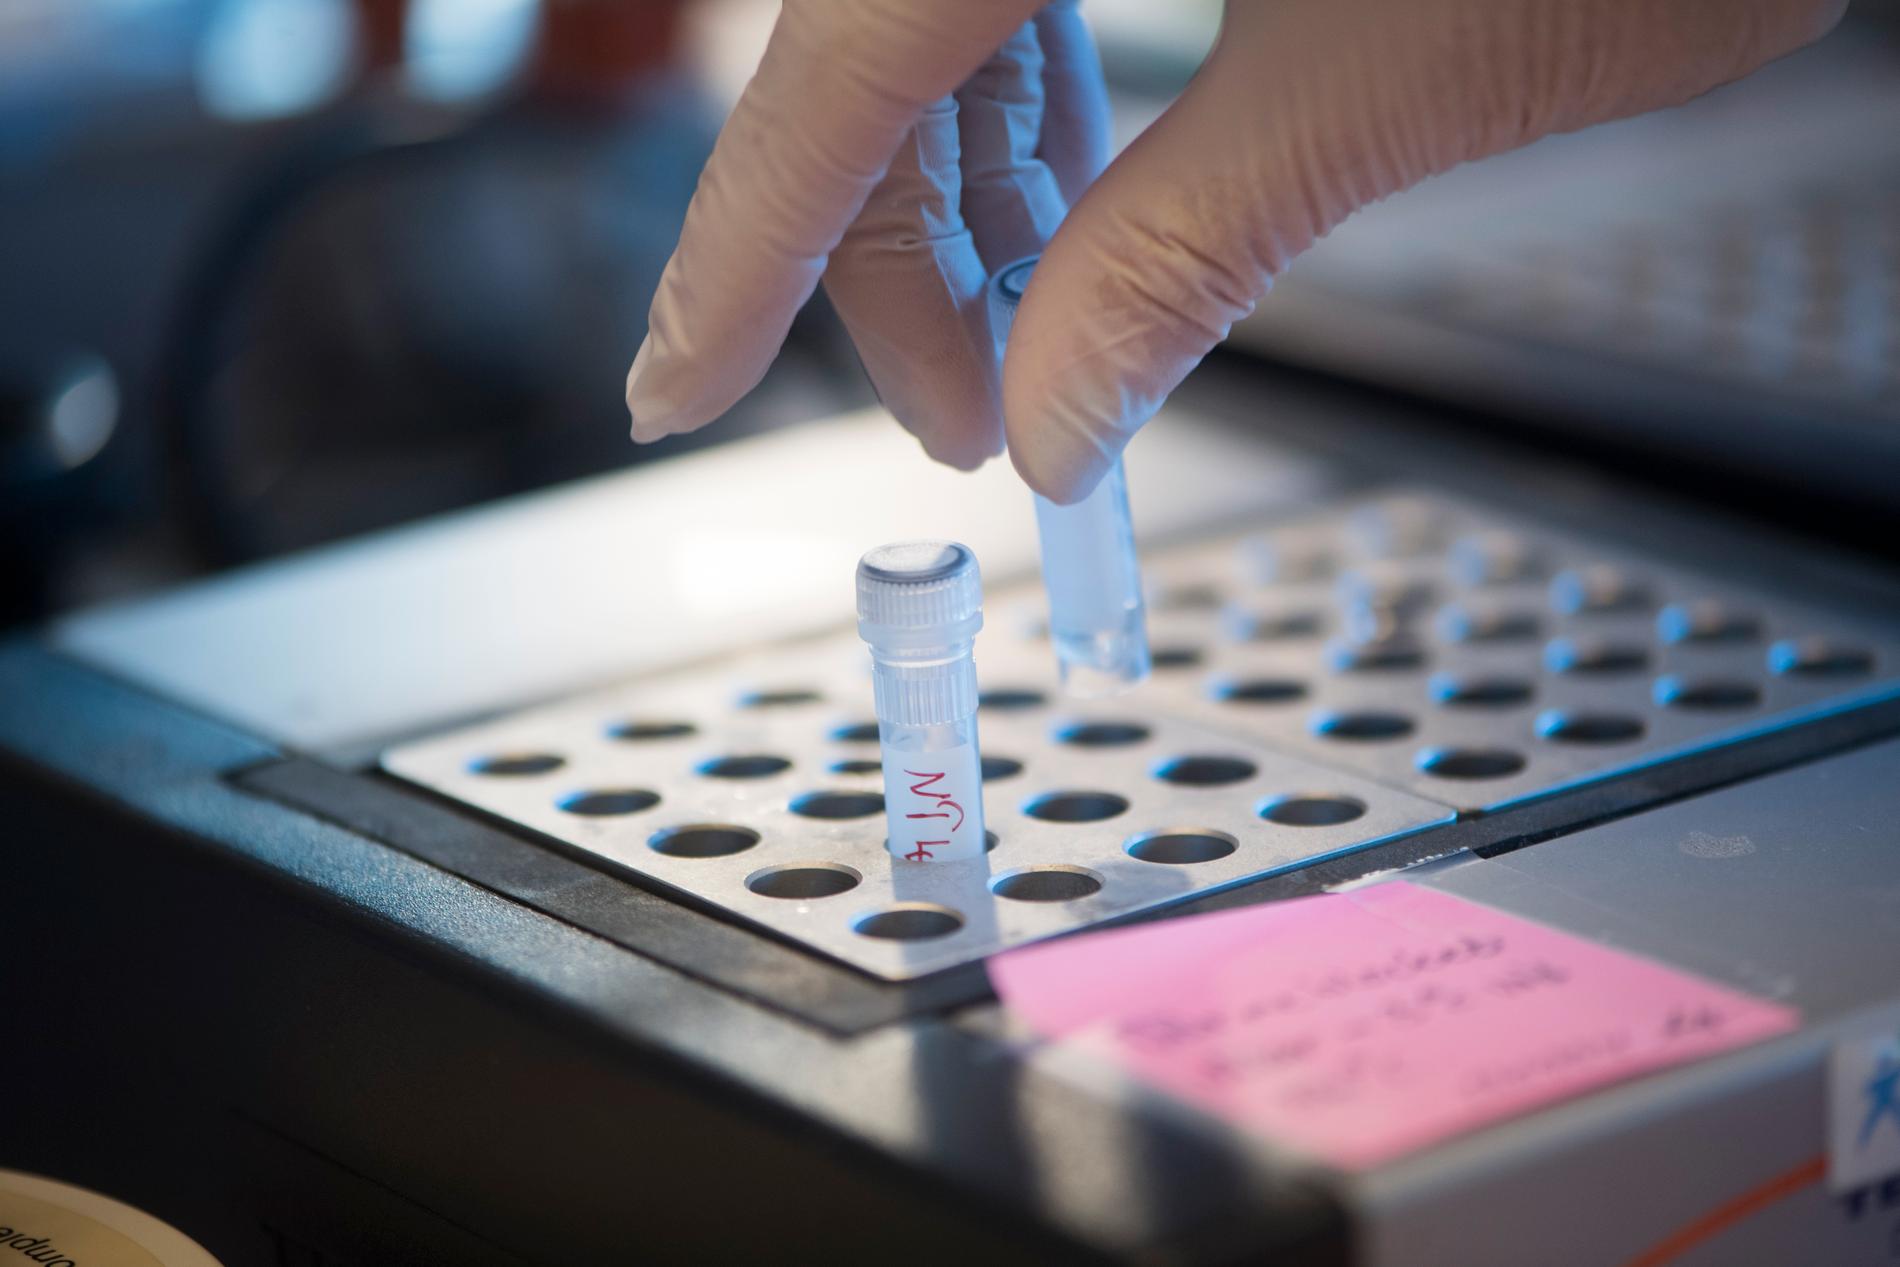 I dagsläget finns inga antikroppstester som kan rekommenderas till allmänheten, enligt Folkhälsomyndigheten. Trots det forsätter vårdcentralen Hedda Care att erbjuda sådana tester. Arkivbild